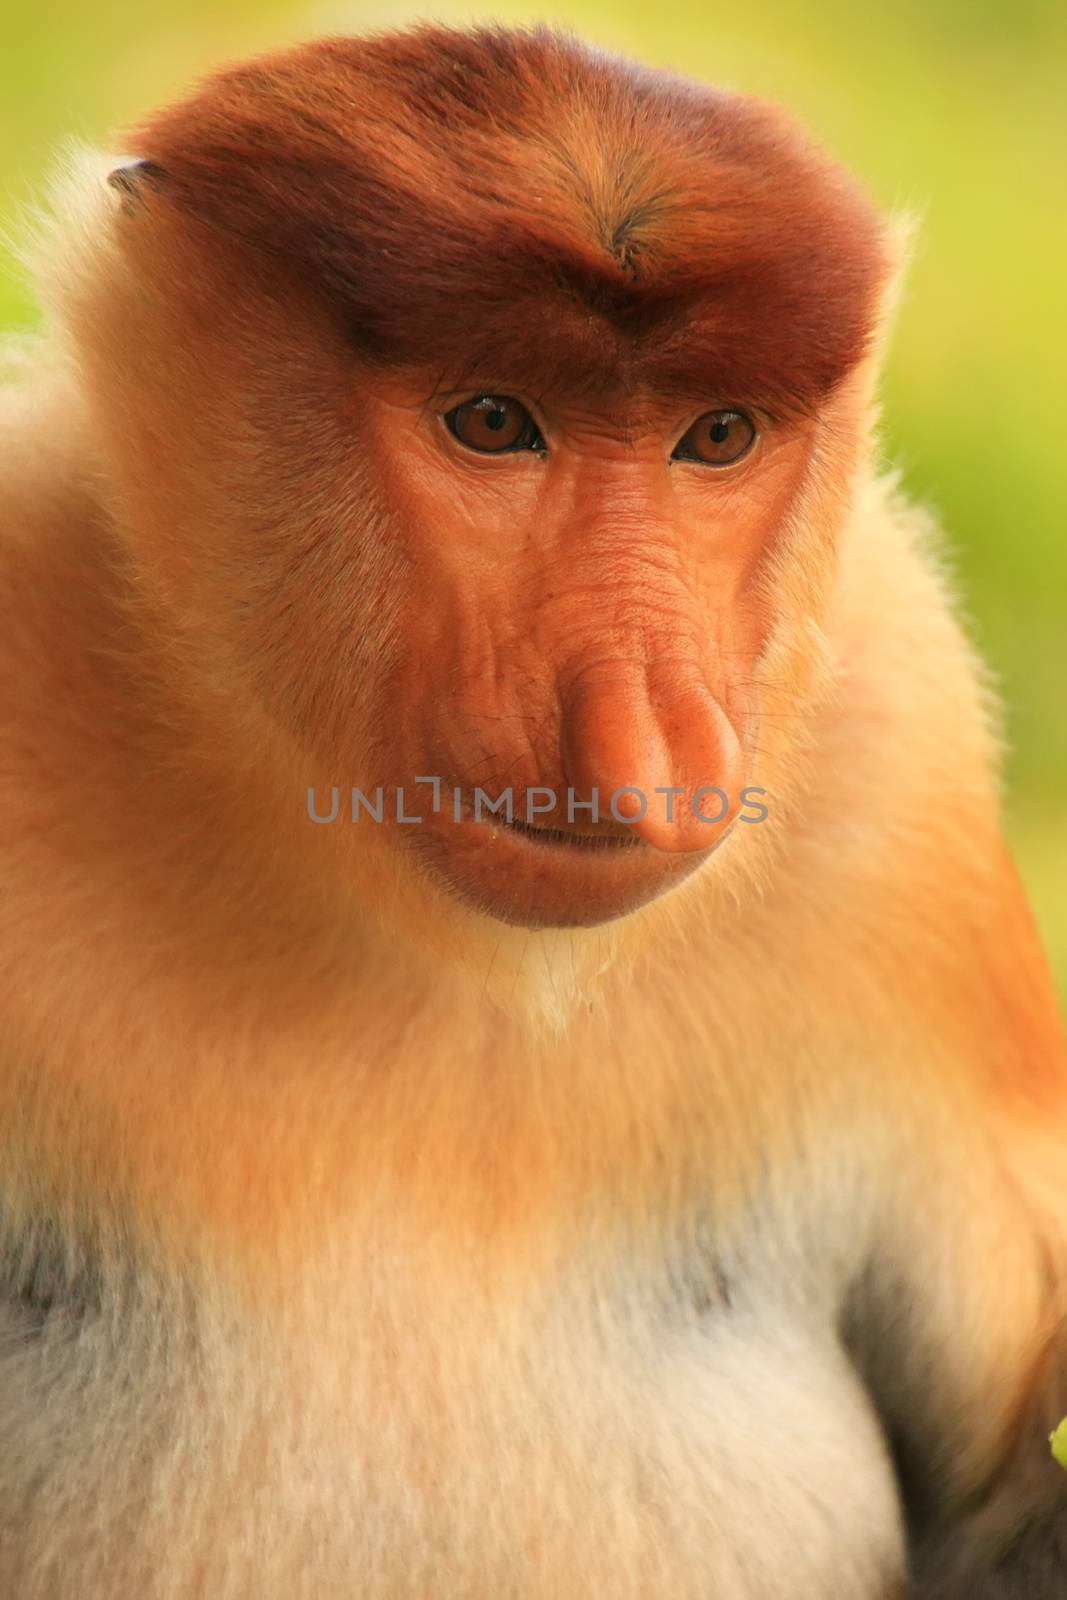 Portrait of Proboscis monkey, Borneo, Malaysia by donya_nedomam